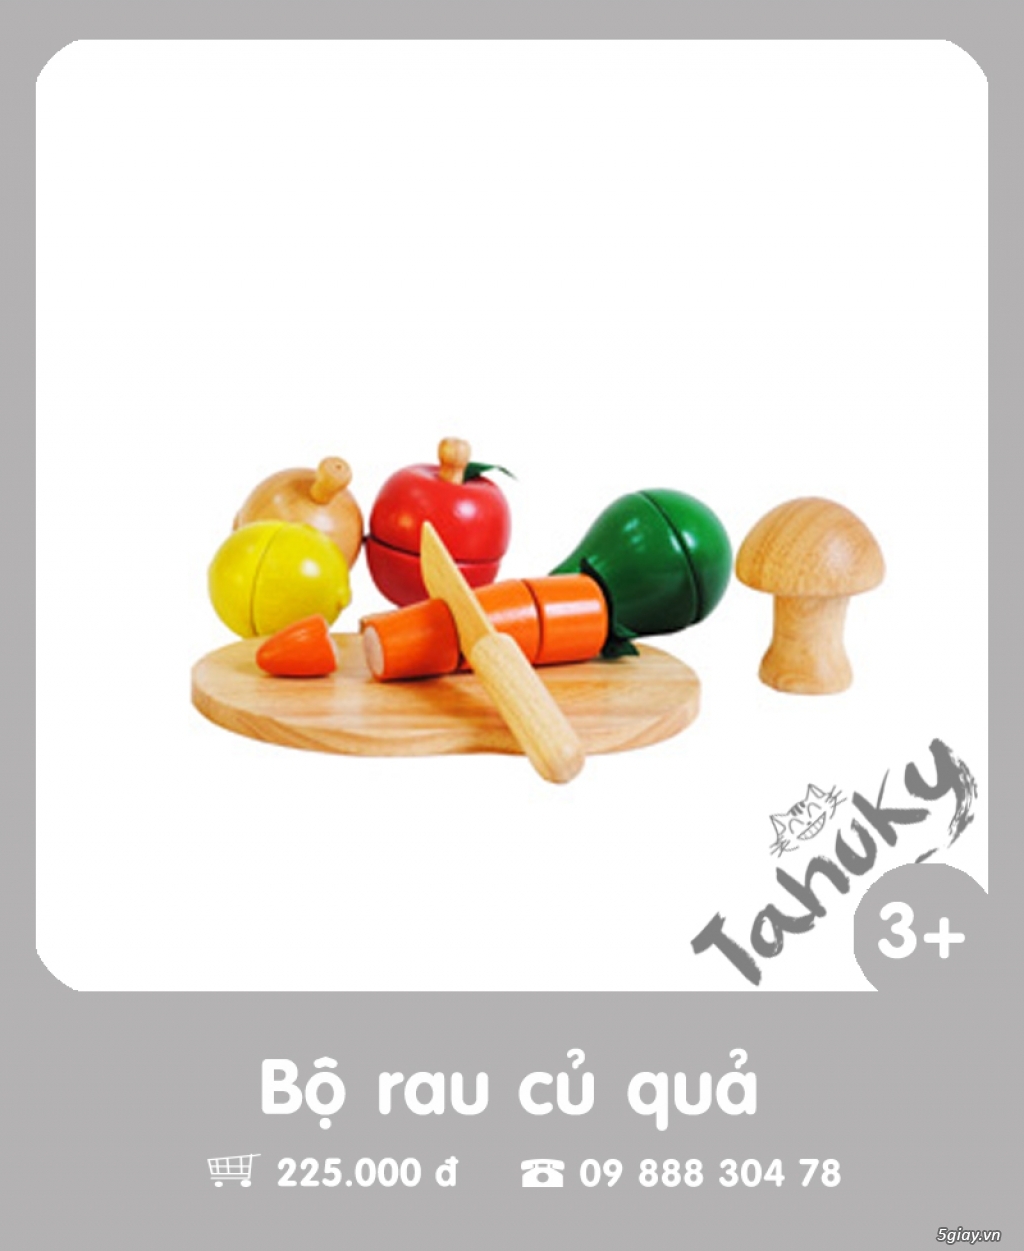 Đồ chơi gỗ an toàn Tahuky (dành cho bé từ 3-5 tuổi) - 9